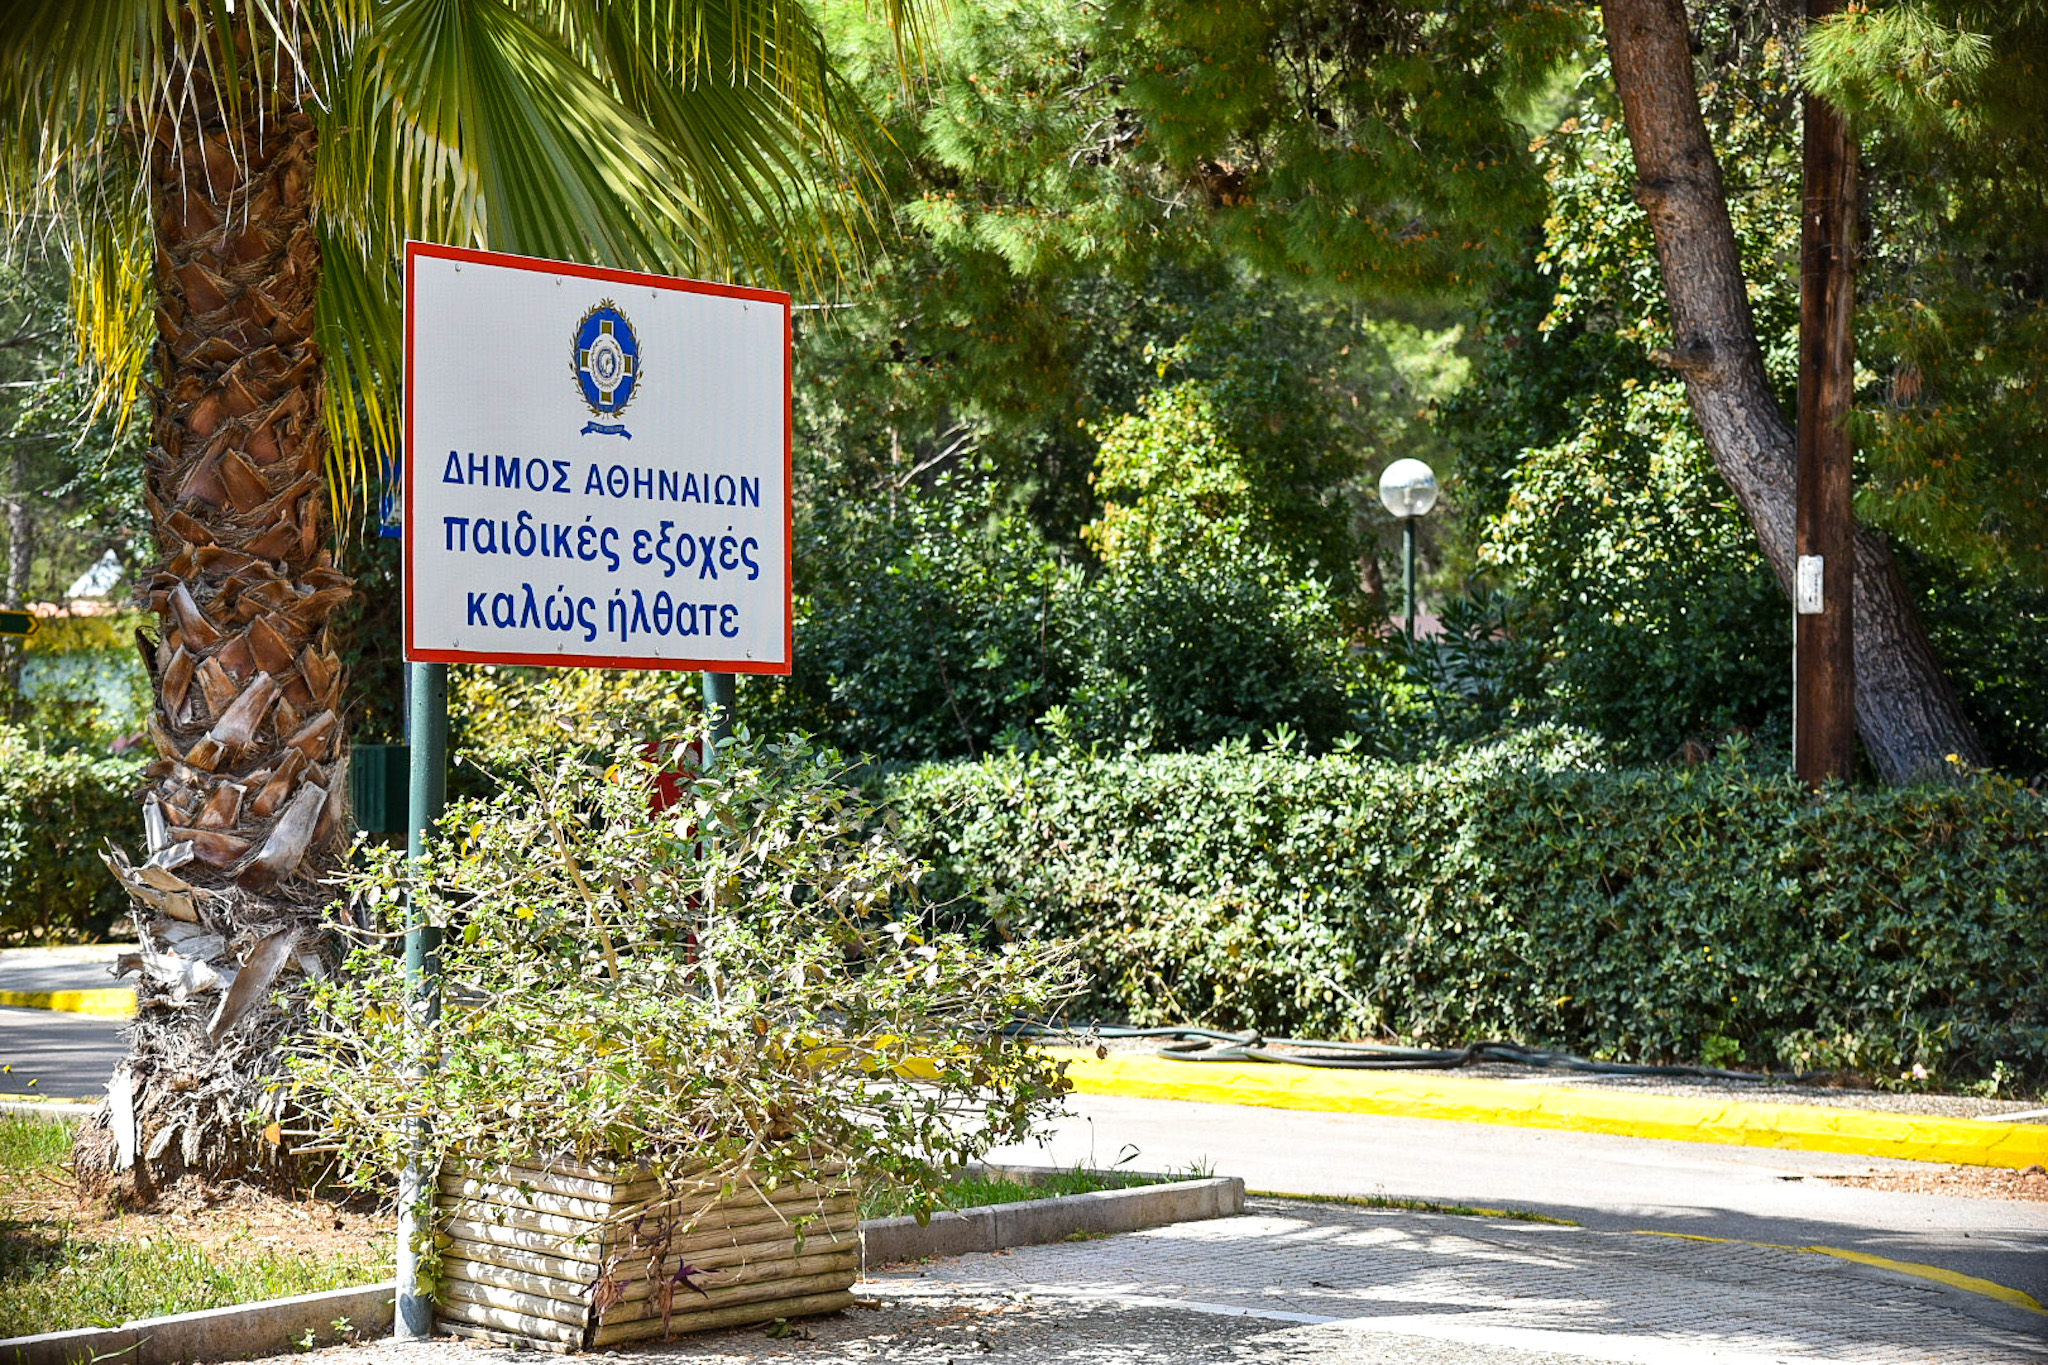 Δήμος Αθηναίων: Παράταση εγγραφών στις Παιδικές Εξοχές του Αγίου Ανδρέα